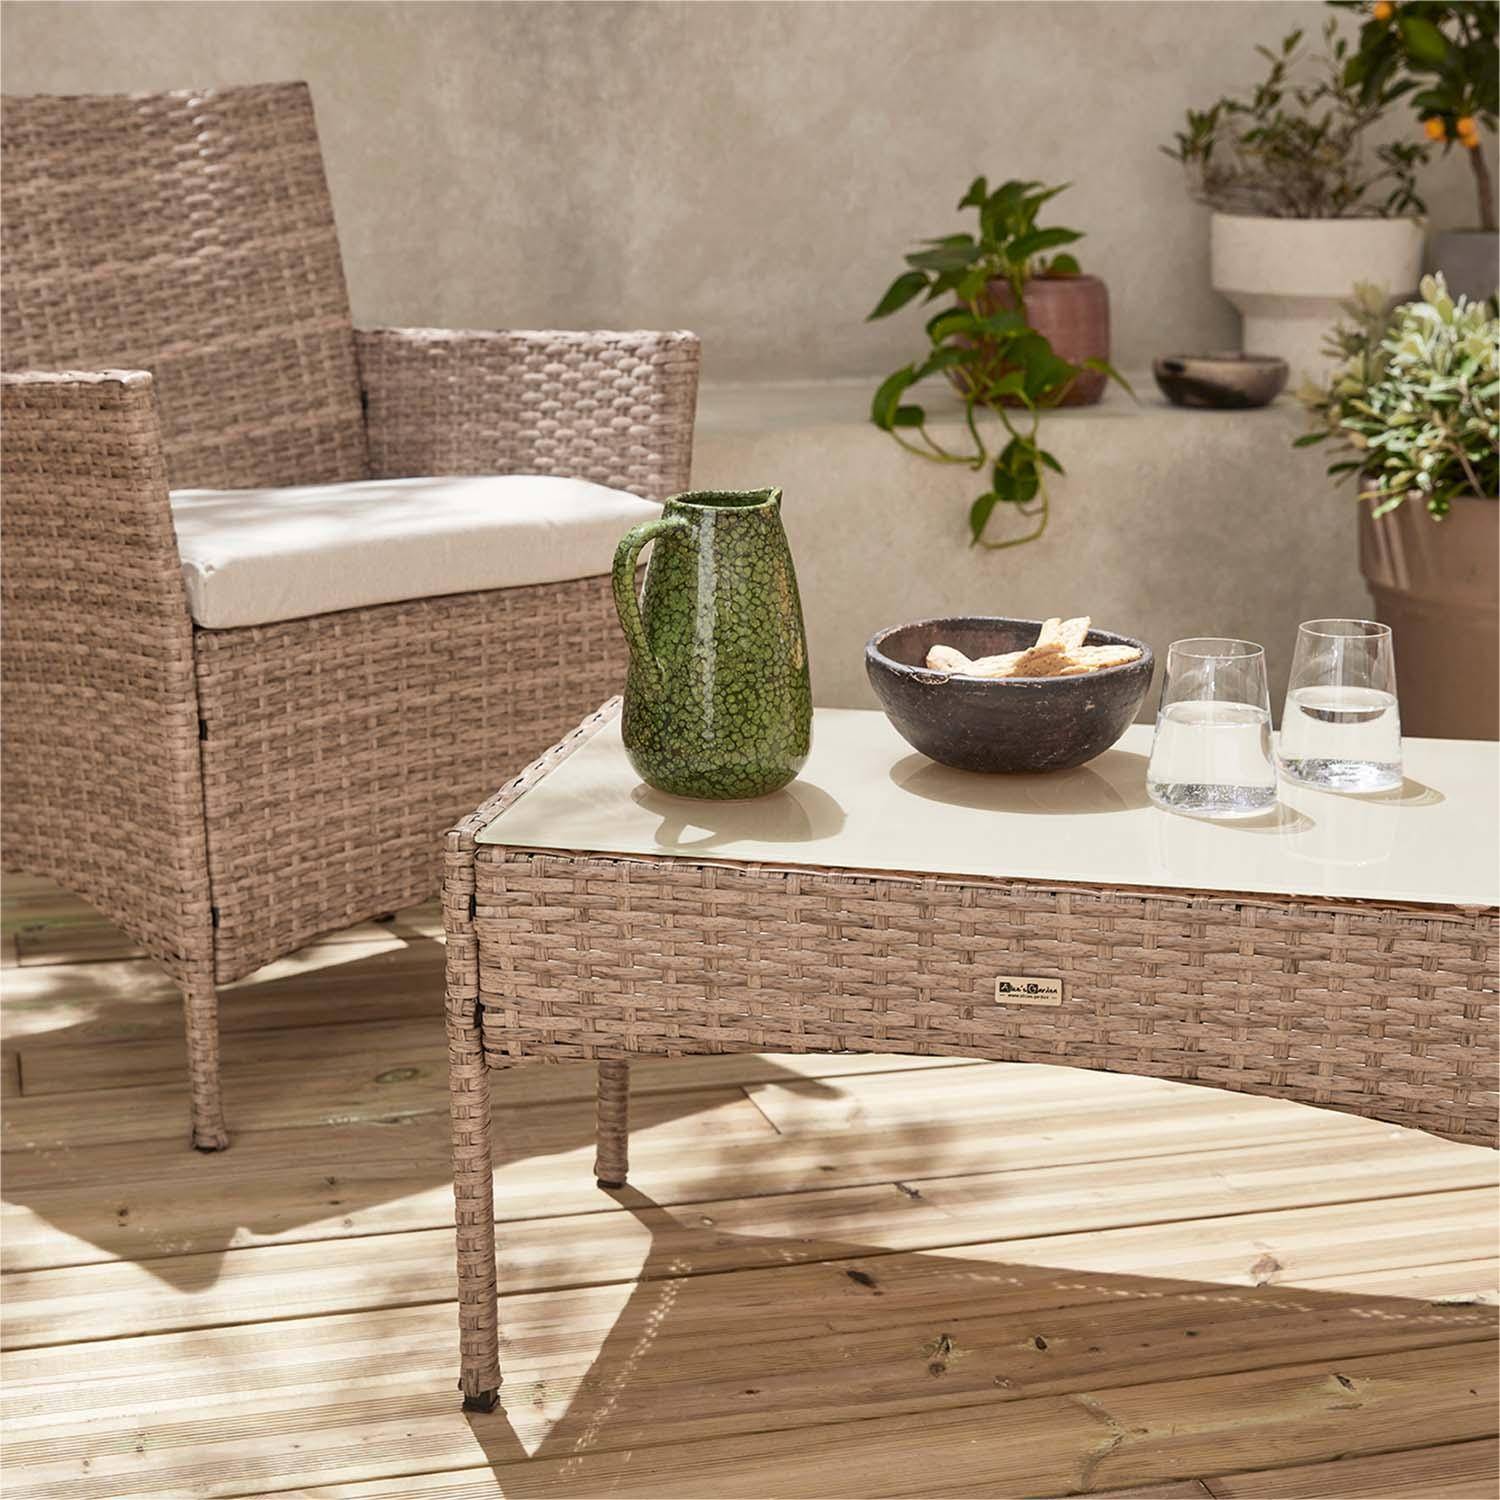 Conjunto de muebles de jardín de resina trenzada - Moltès - Natural, cojines beige - 4 plazas - 1 sofá, 2 sillones, una mesa de centro,sweeek,Photo2